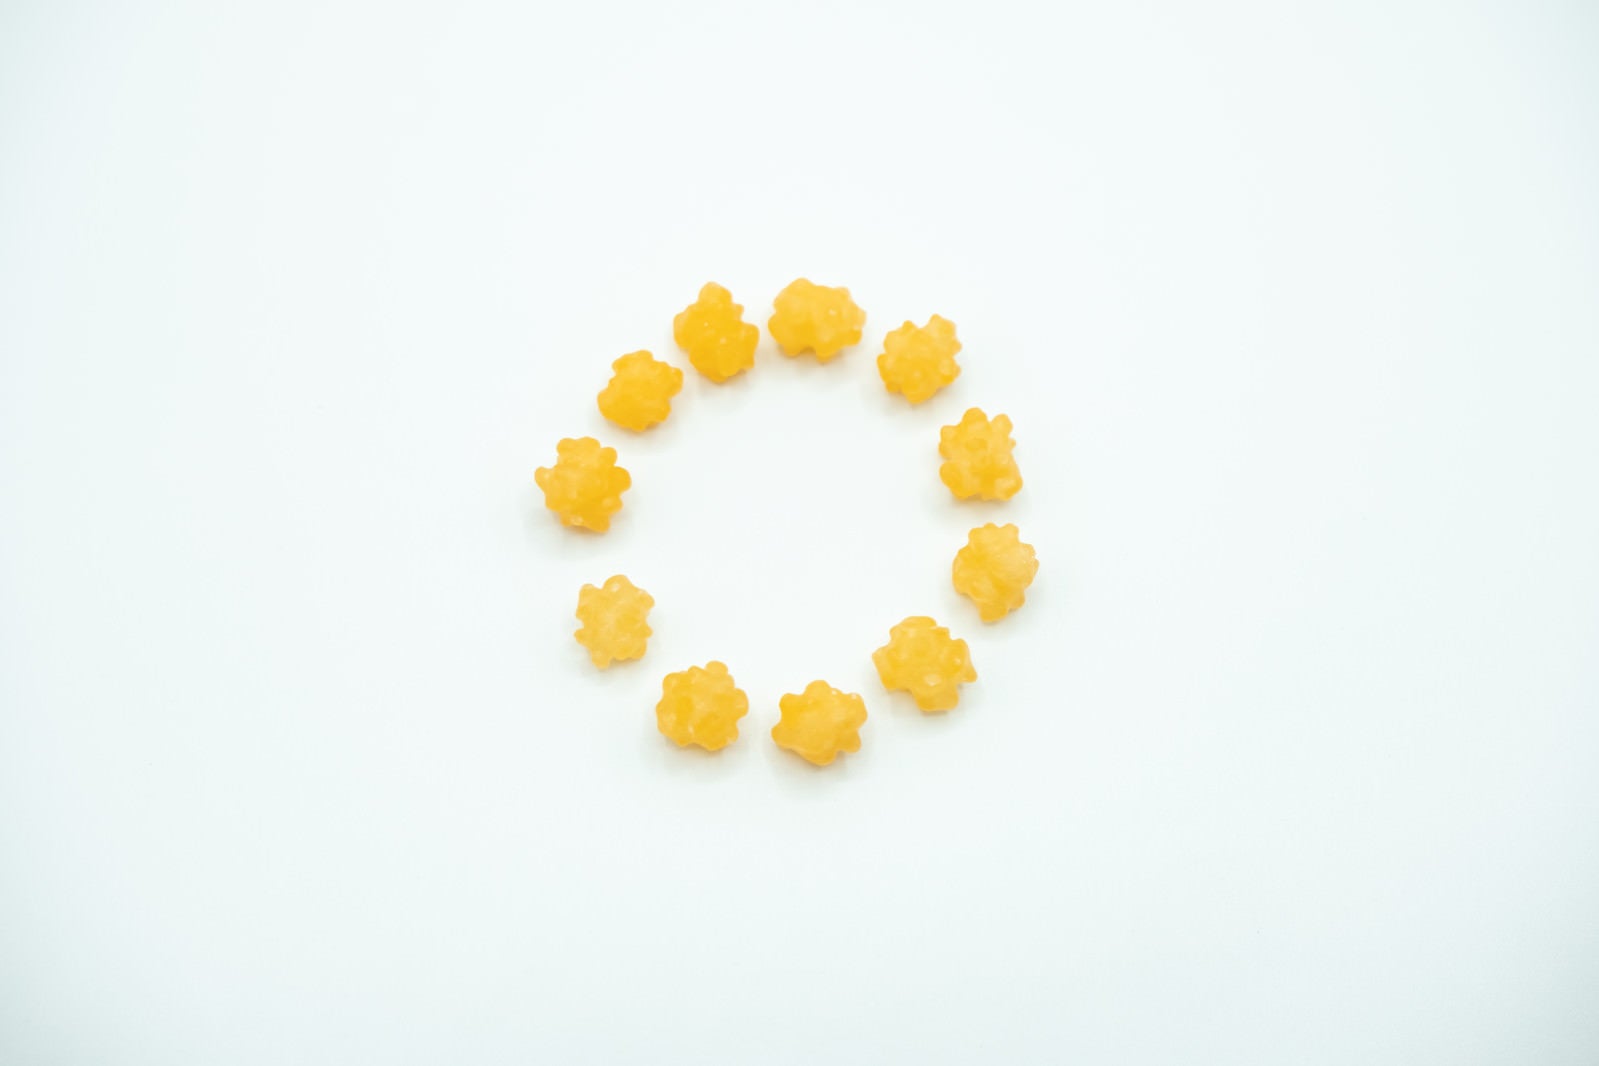 「丸く並べた金平糖」の写真